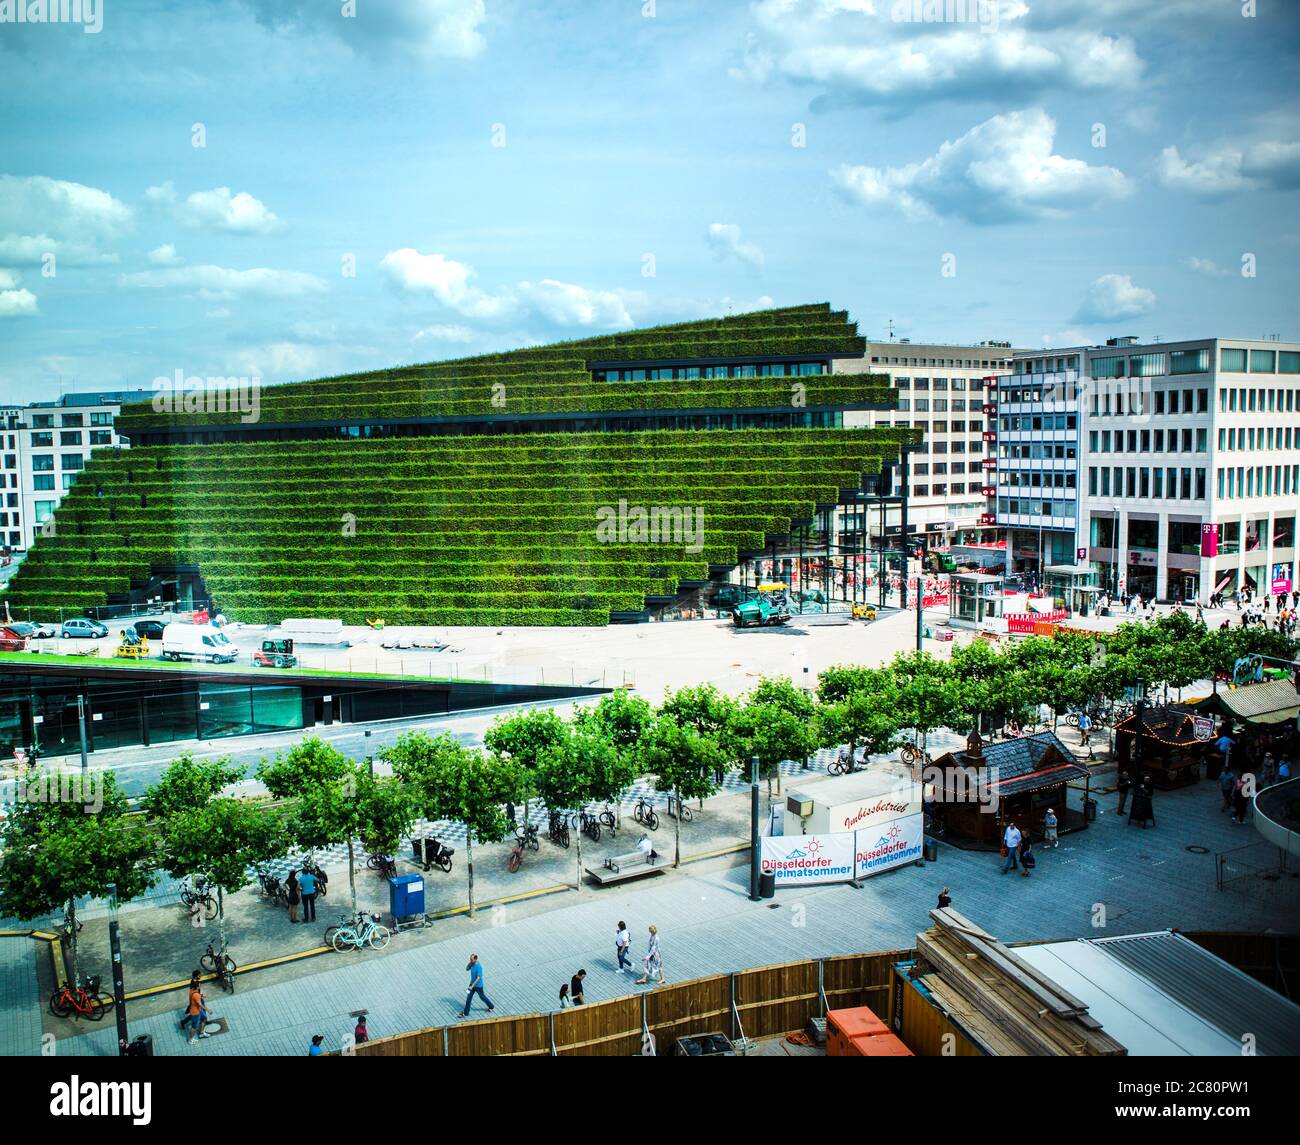 Die größte Grünfassade Europas ensteht in Düsseldorf am Kö-Bogen 2. Die Architekten von Ingenhoven gestalten die City neu. Foto Stock